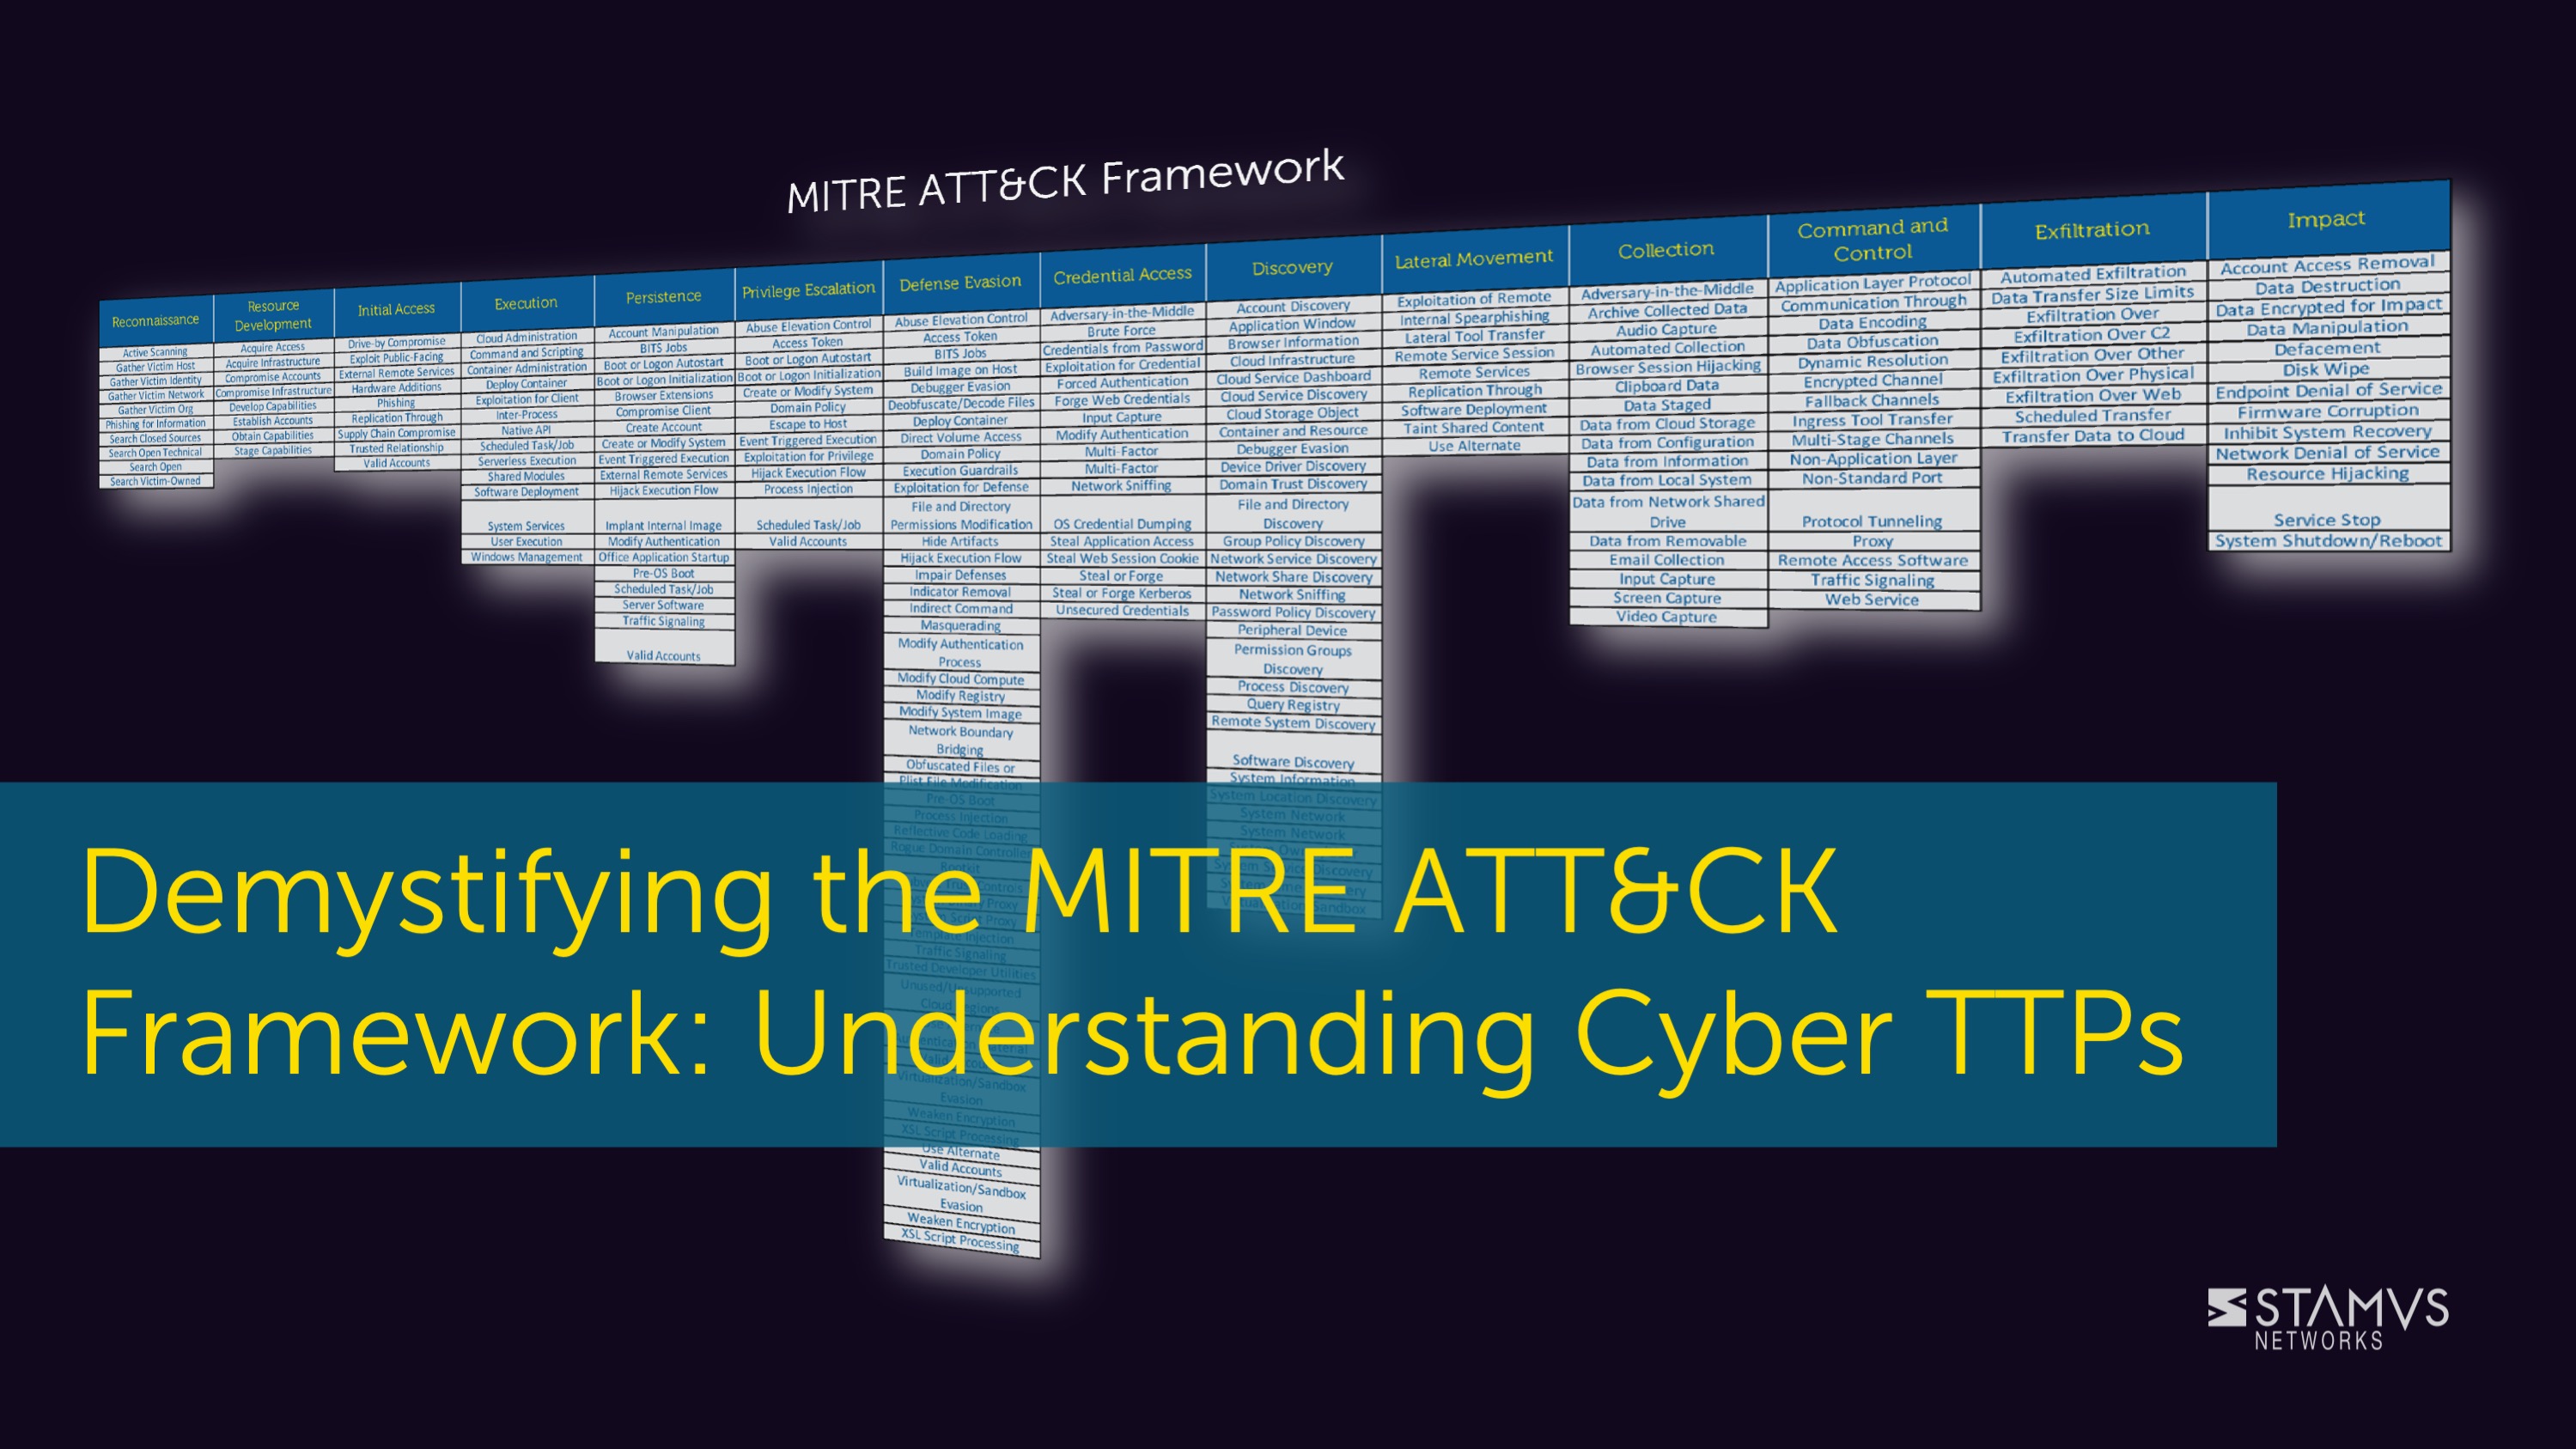 Demystifying the MITRE ATT&CK Framework: Understanding Cyber TTPs